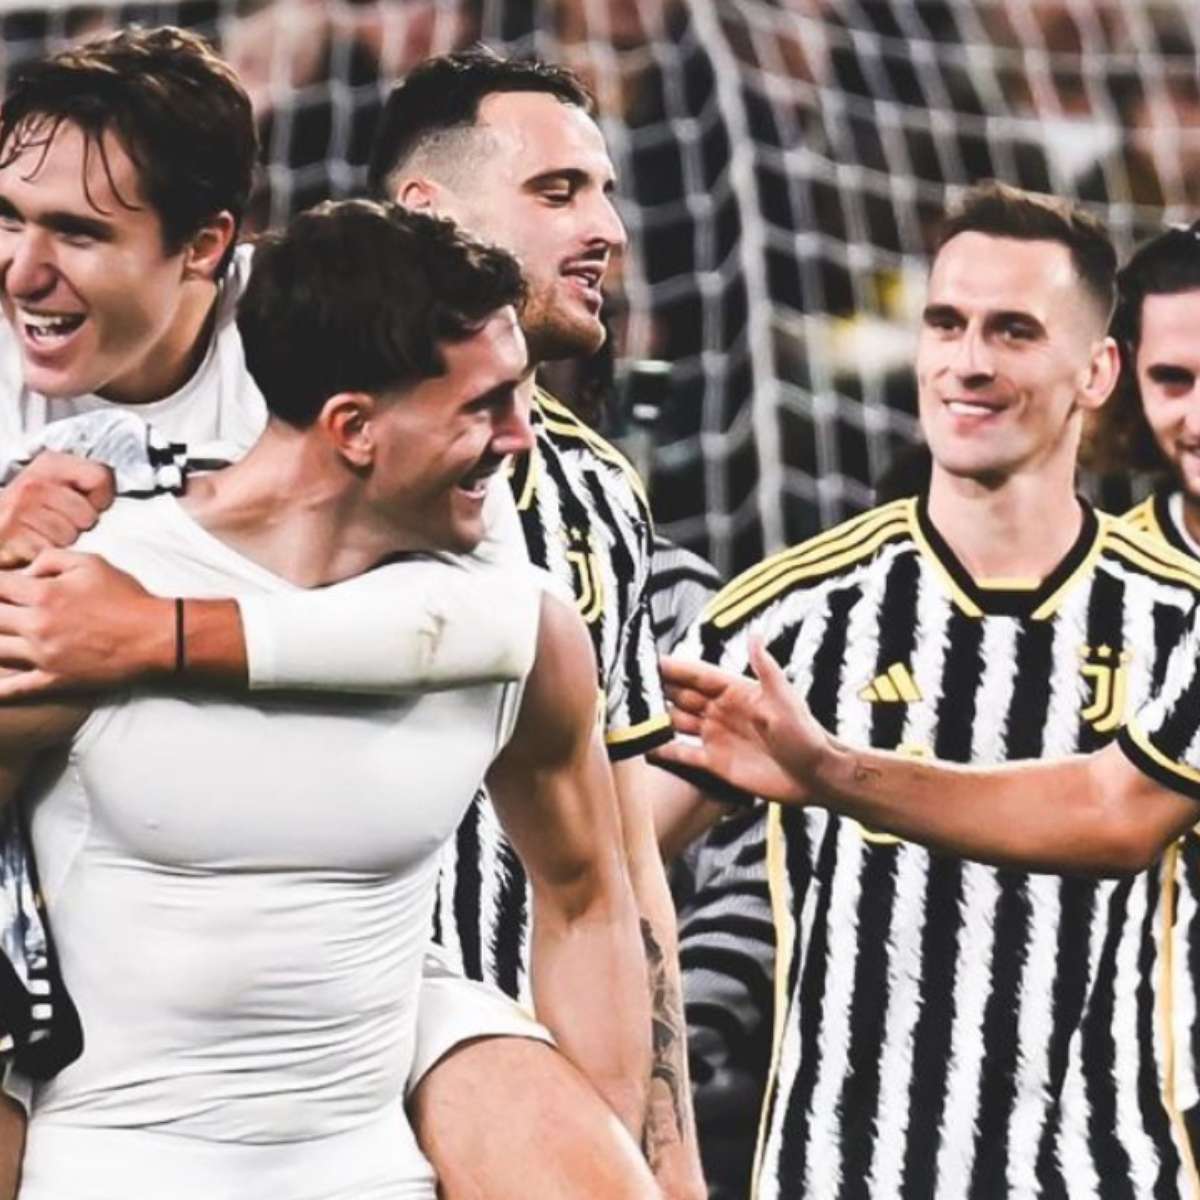 Juventus x Napoli: horário e onde assistir ao vivo pelo Campeonato Italiano